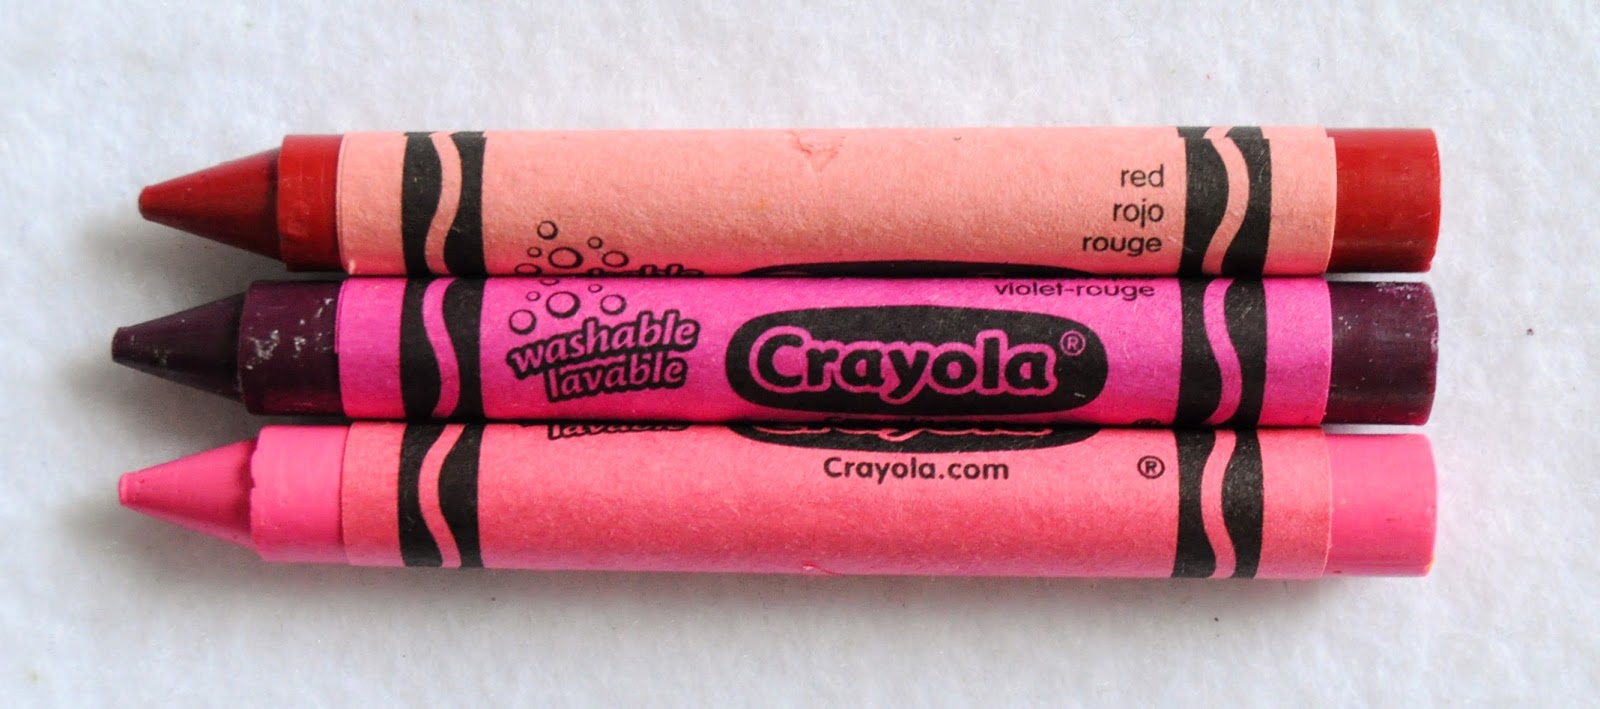 Crayola Crayon Set, 16-Colors